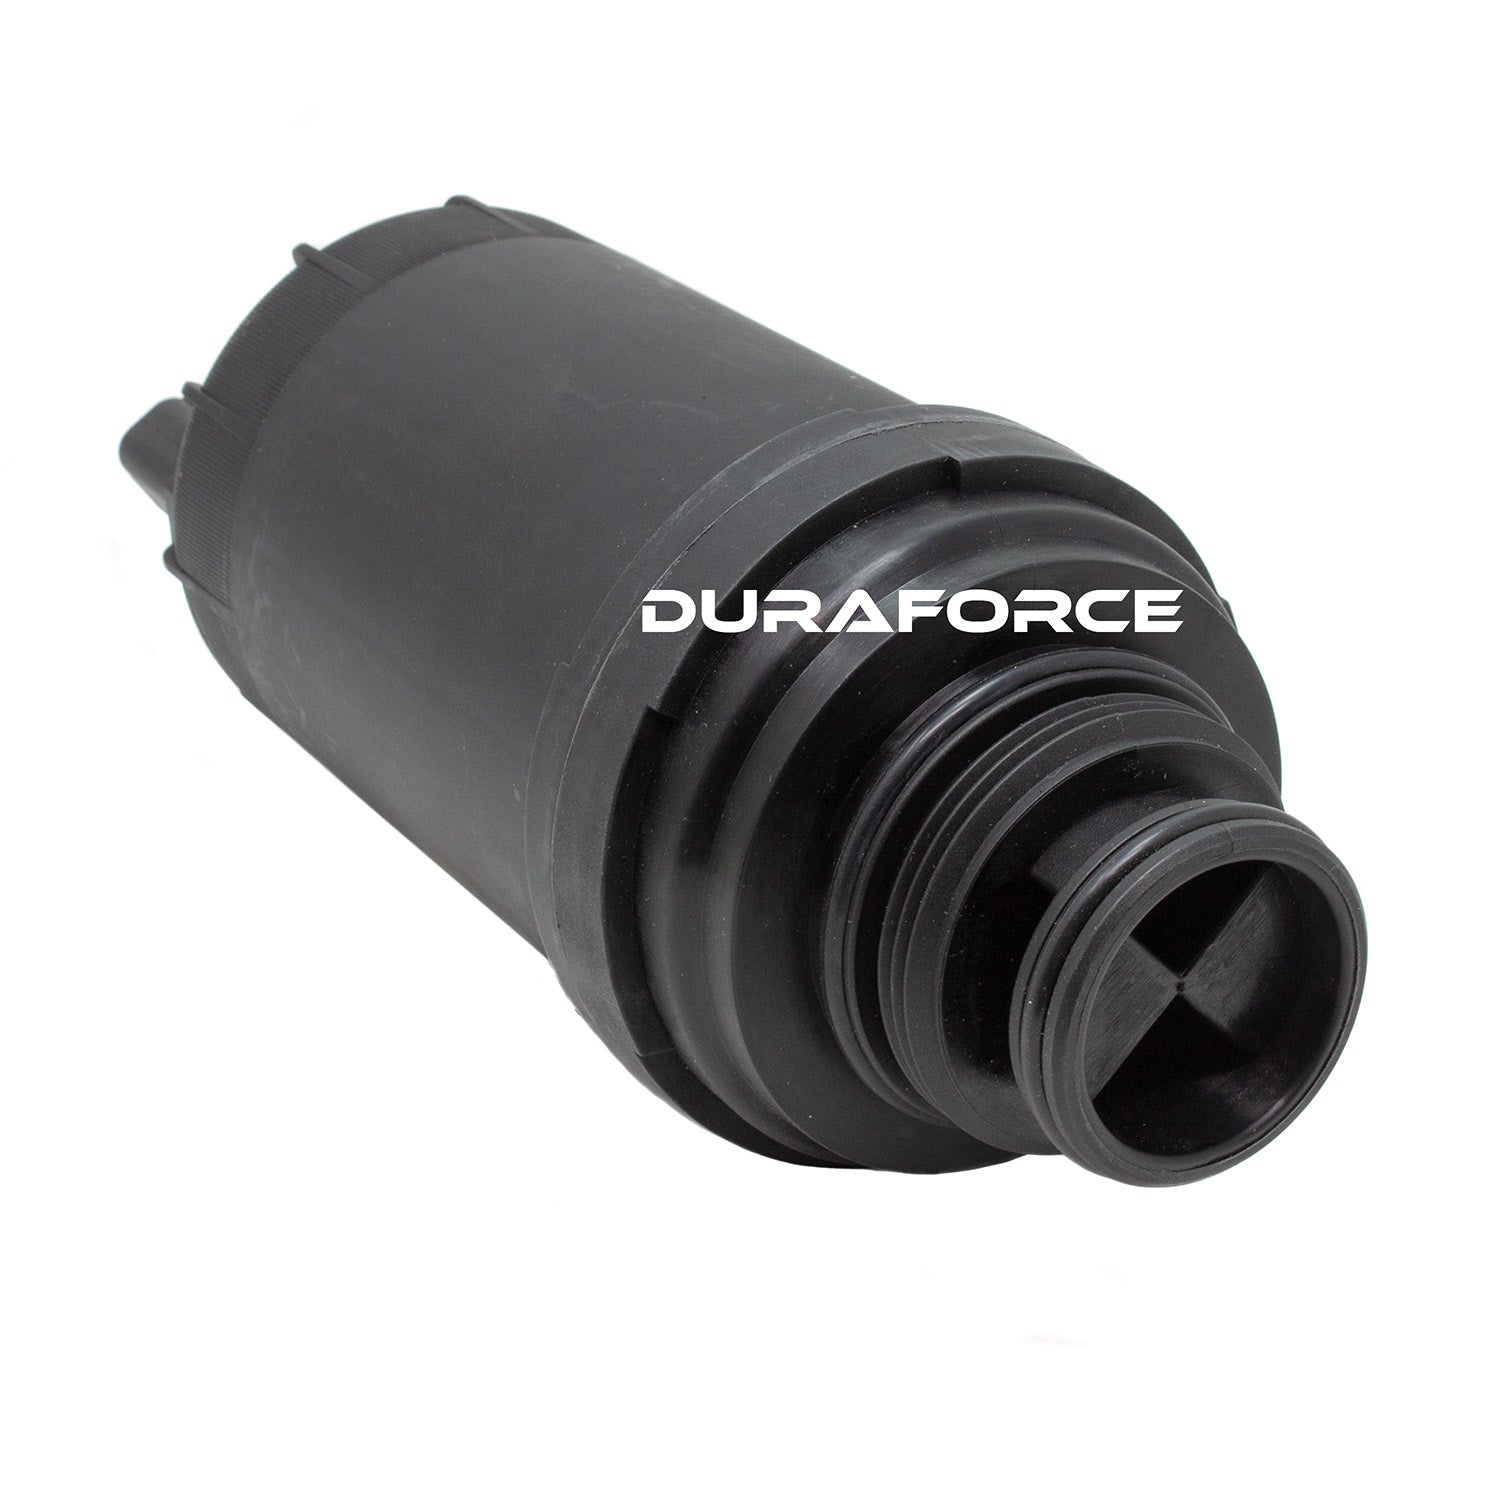 Duraforce 6678233 7023589, Engine Oil & Fuel Filter Kit For Bobcat